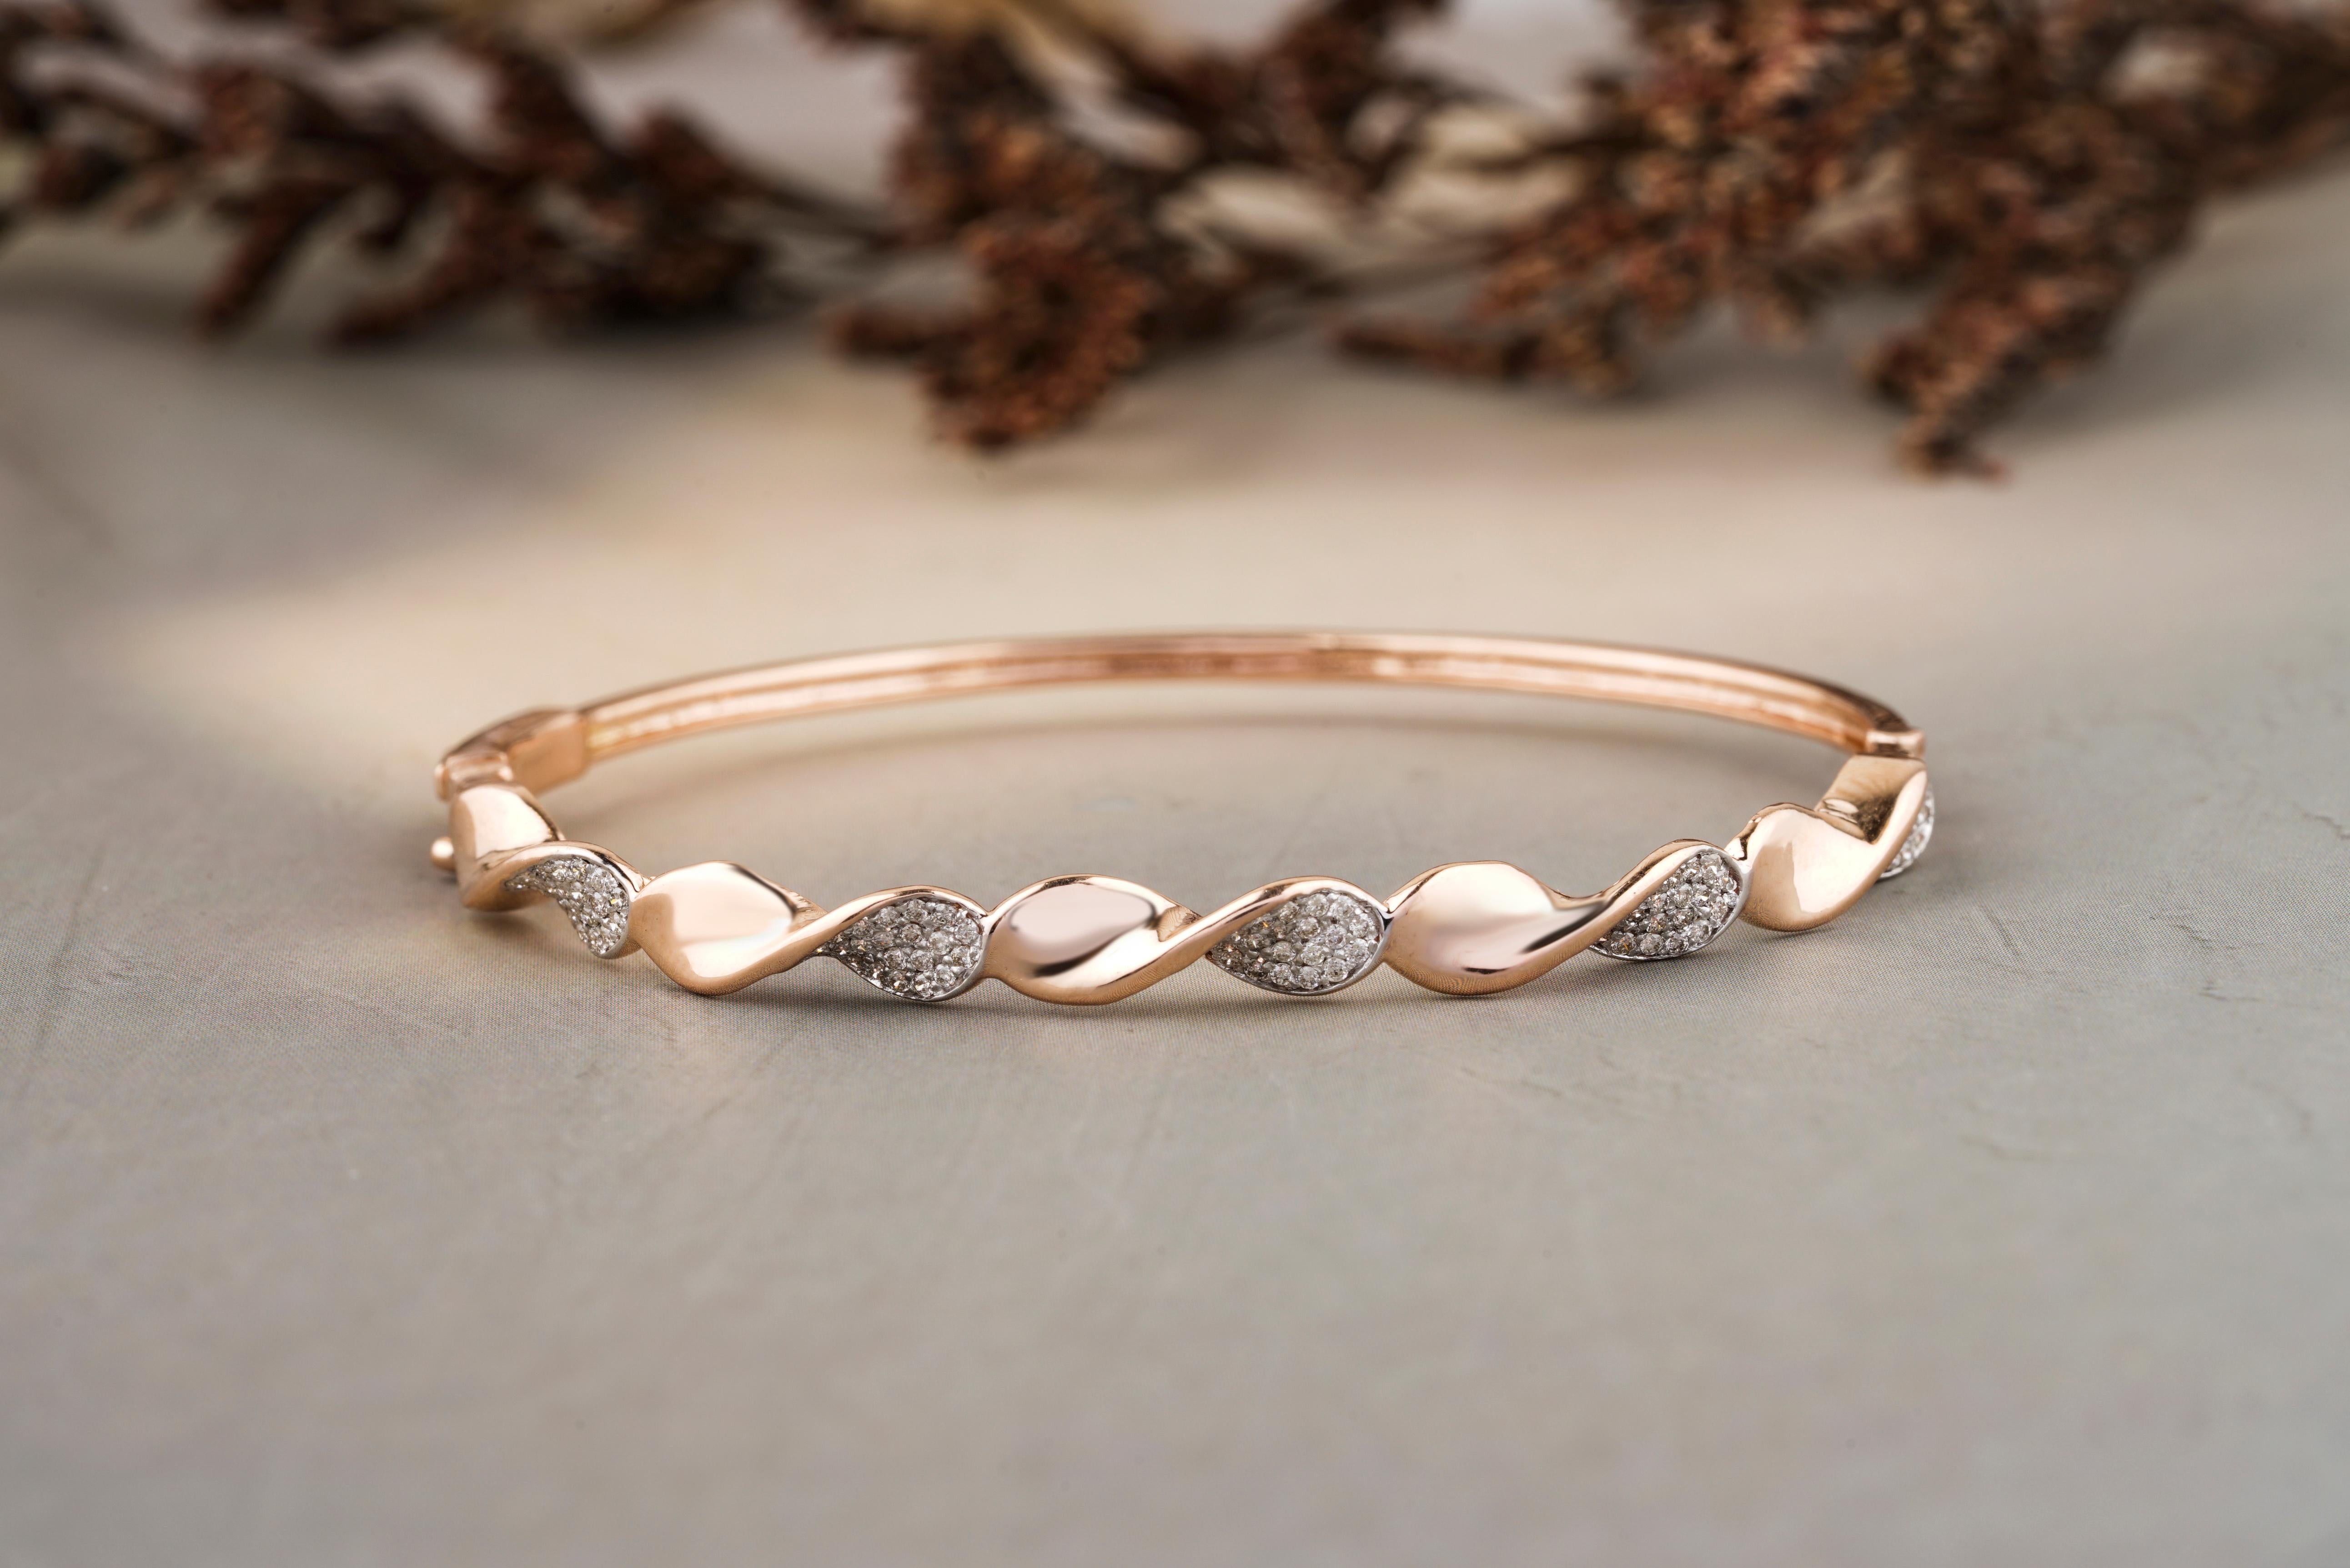 Le bracelet Twisted Wavy Diamond est un magnifique bijou en or massif 18 carats. Son design présente un mélange captivant d'éléments torsadés et ondulés, complété par des diamants éblouissants. Ce bracelet dégage une élégance intemporelle et